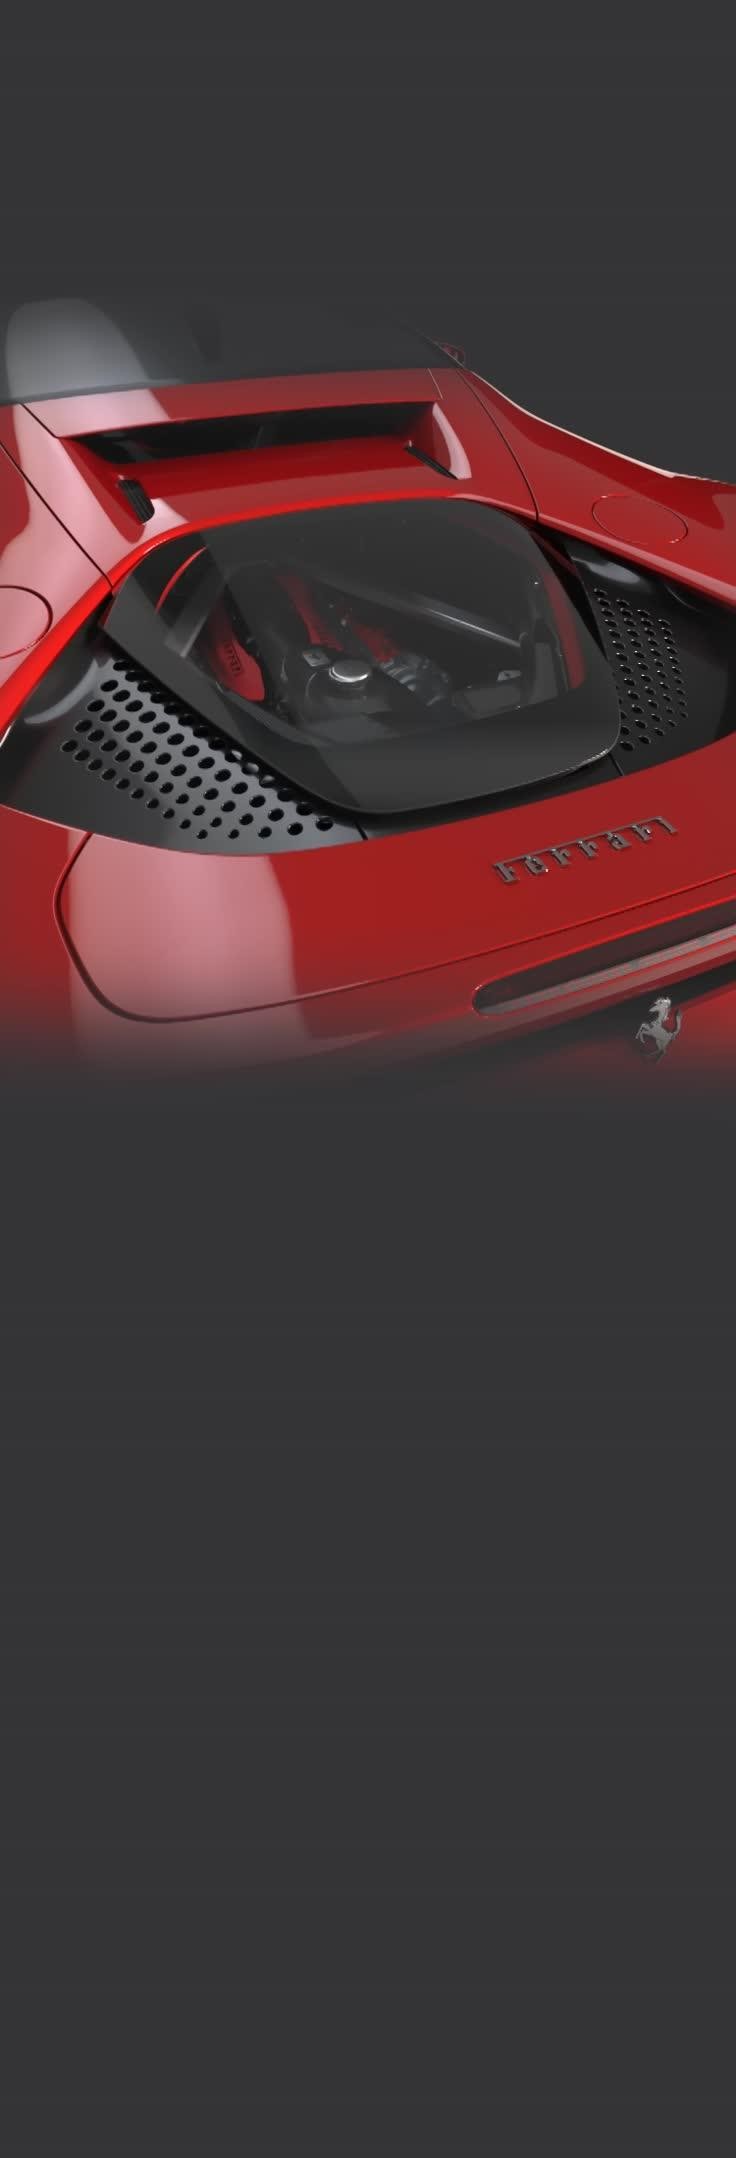 Voiture télécommandée rechargeable Ferrari SF90 Stradale • Voitures  Télécommandées